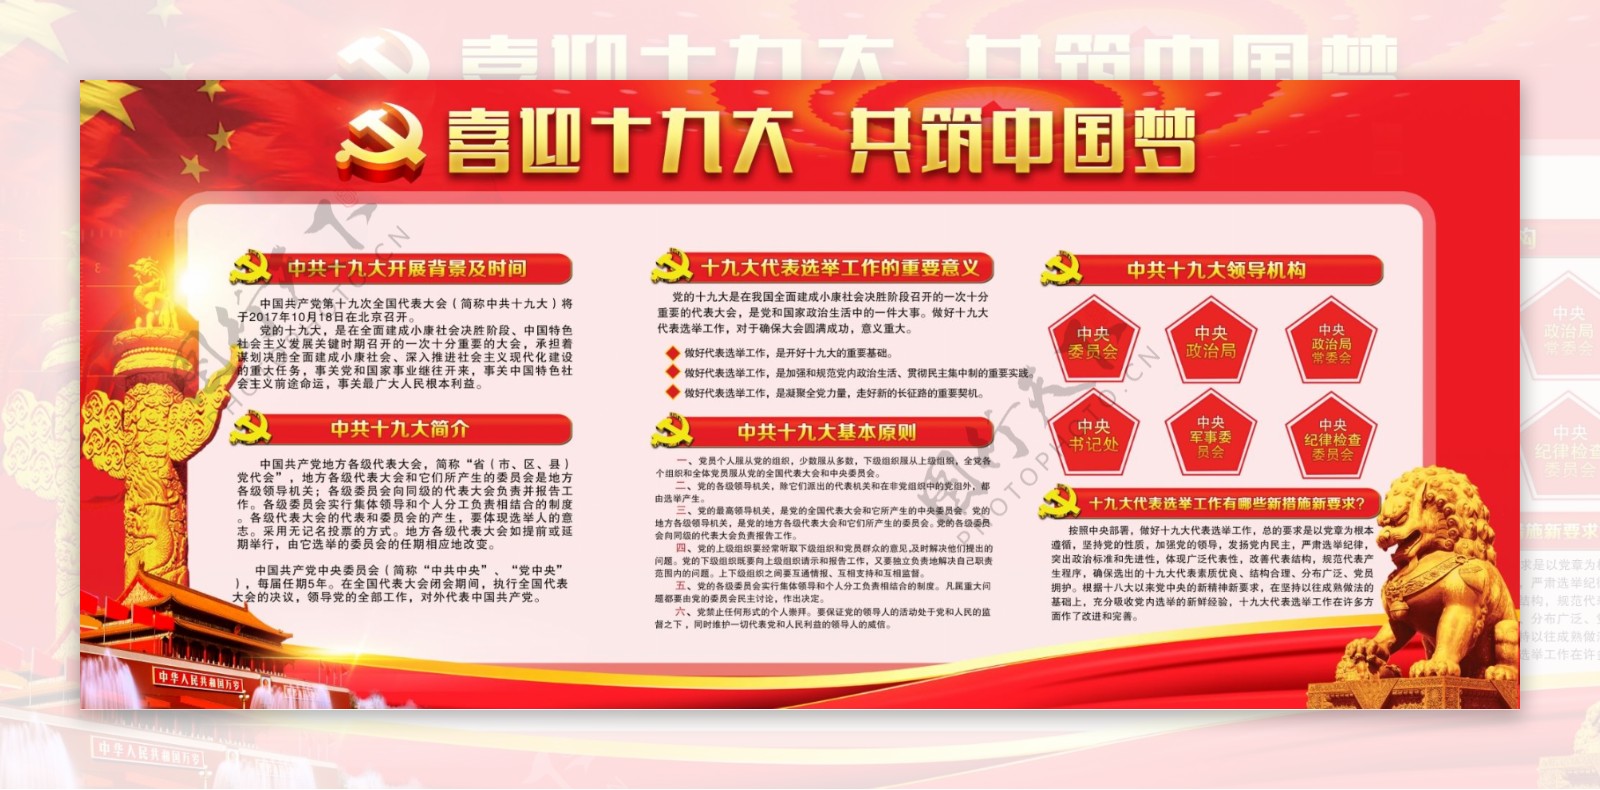 红色喜迎十九大共筑中国梦内容党建展板设计